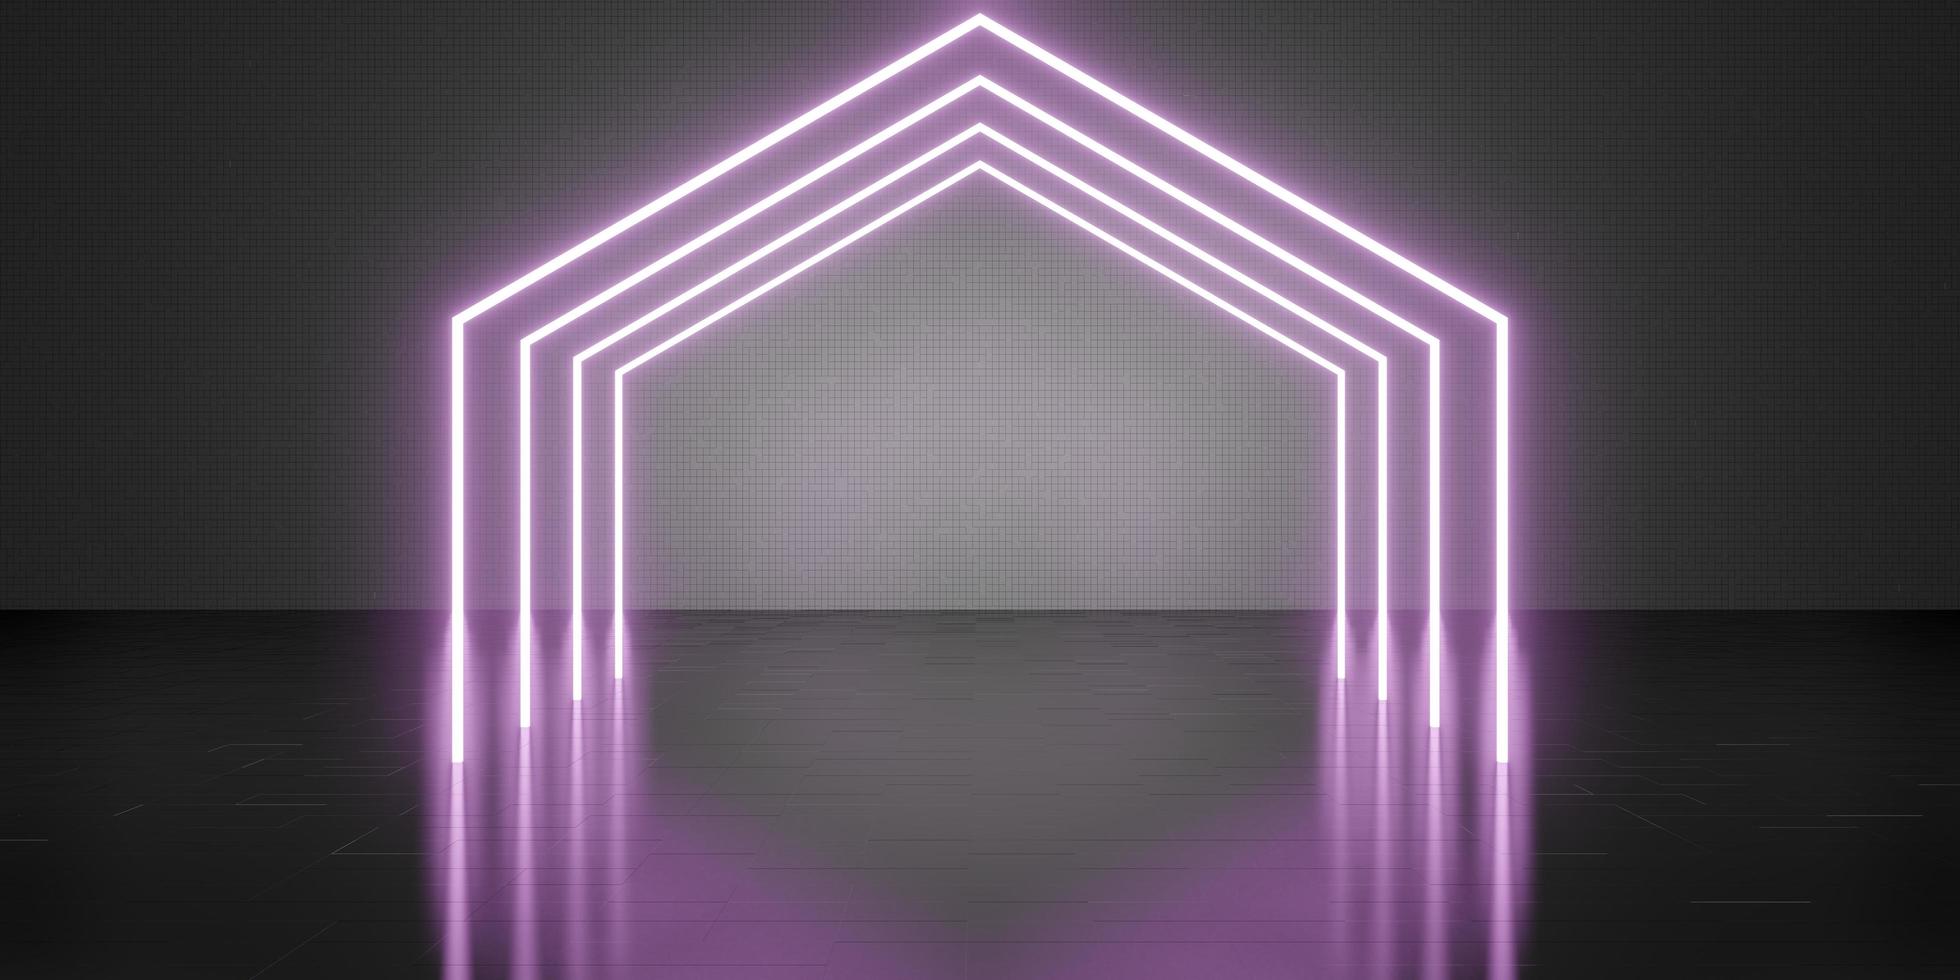 zeshoek laserlicht kamer achtergrond neonlicht technologie stijl vloer en muur 3d illustratie foto